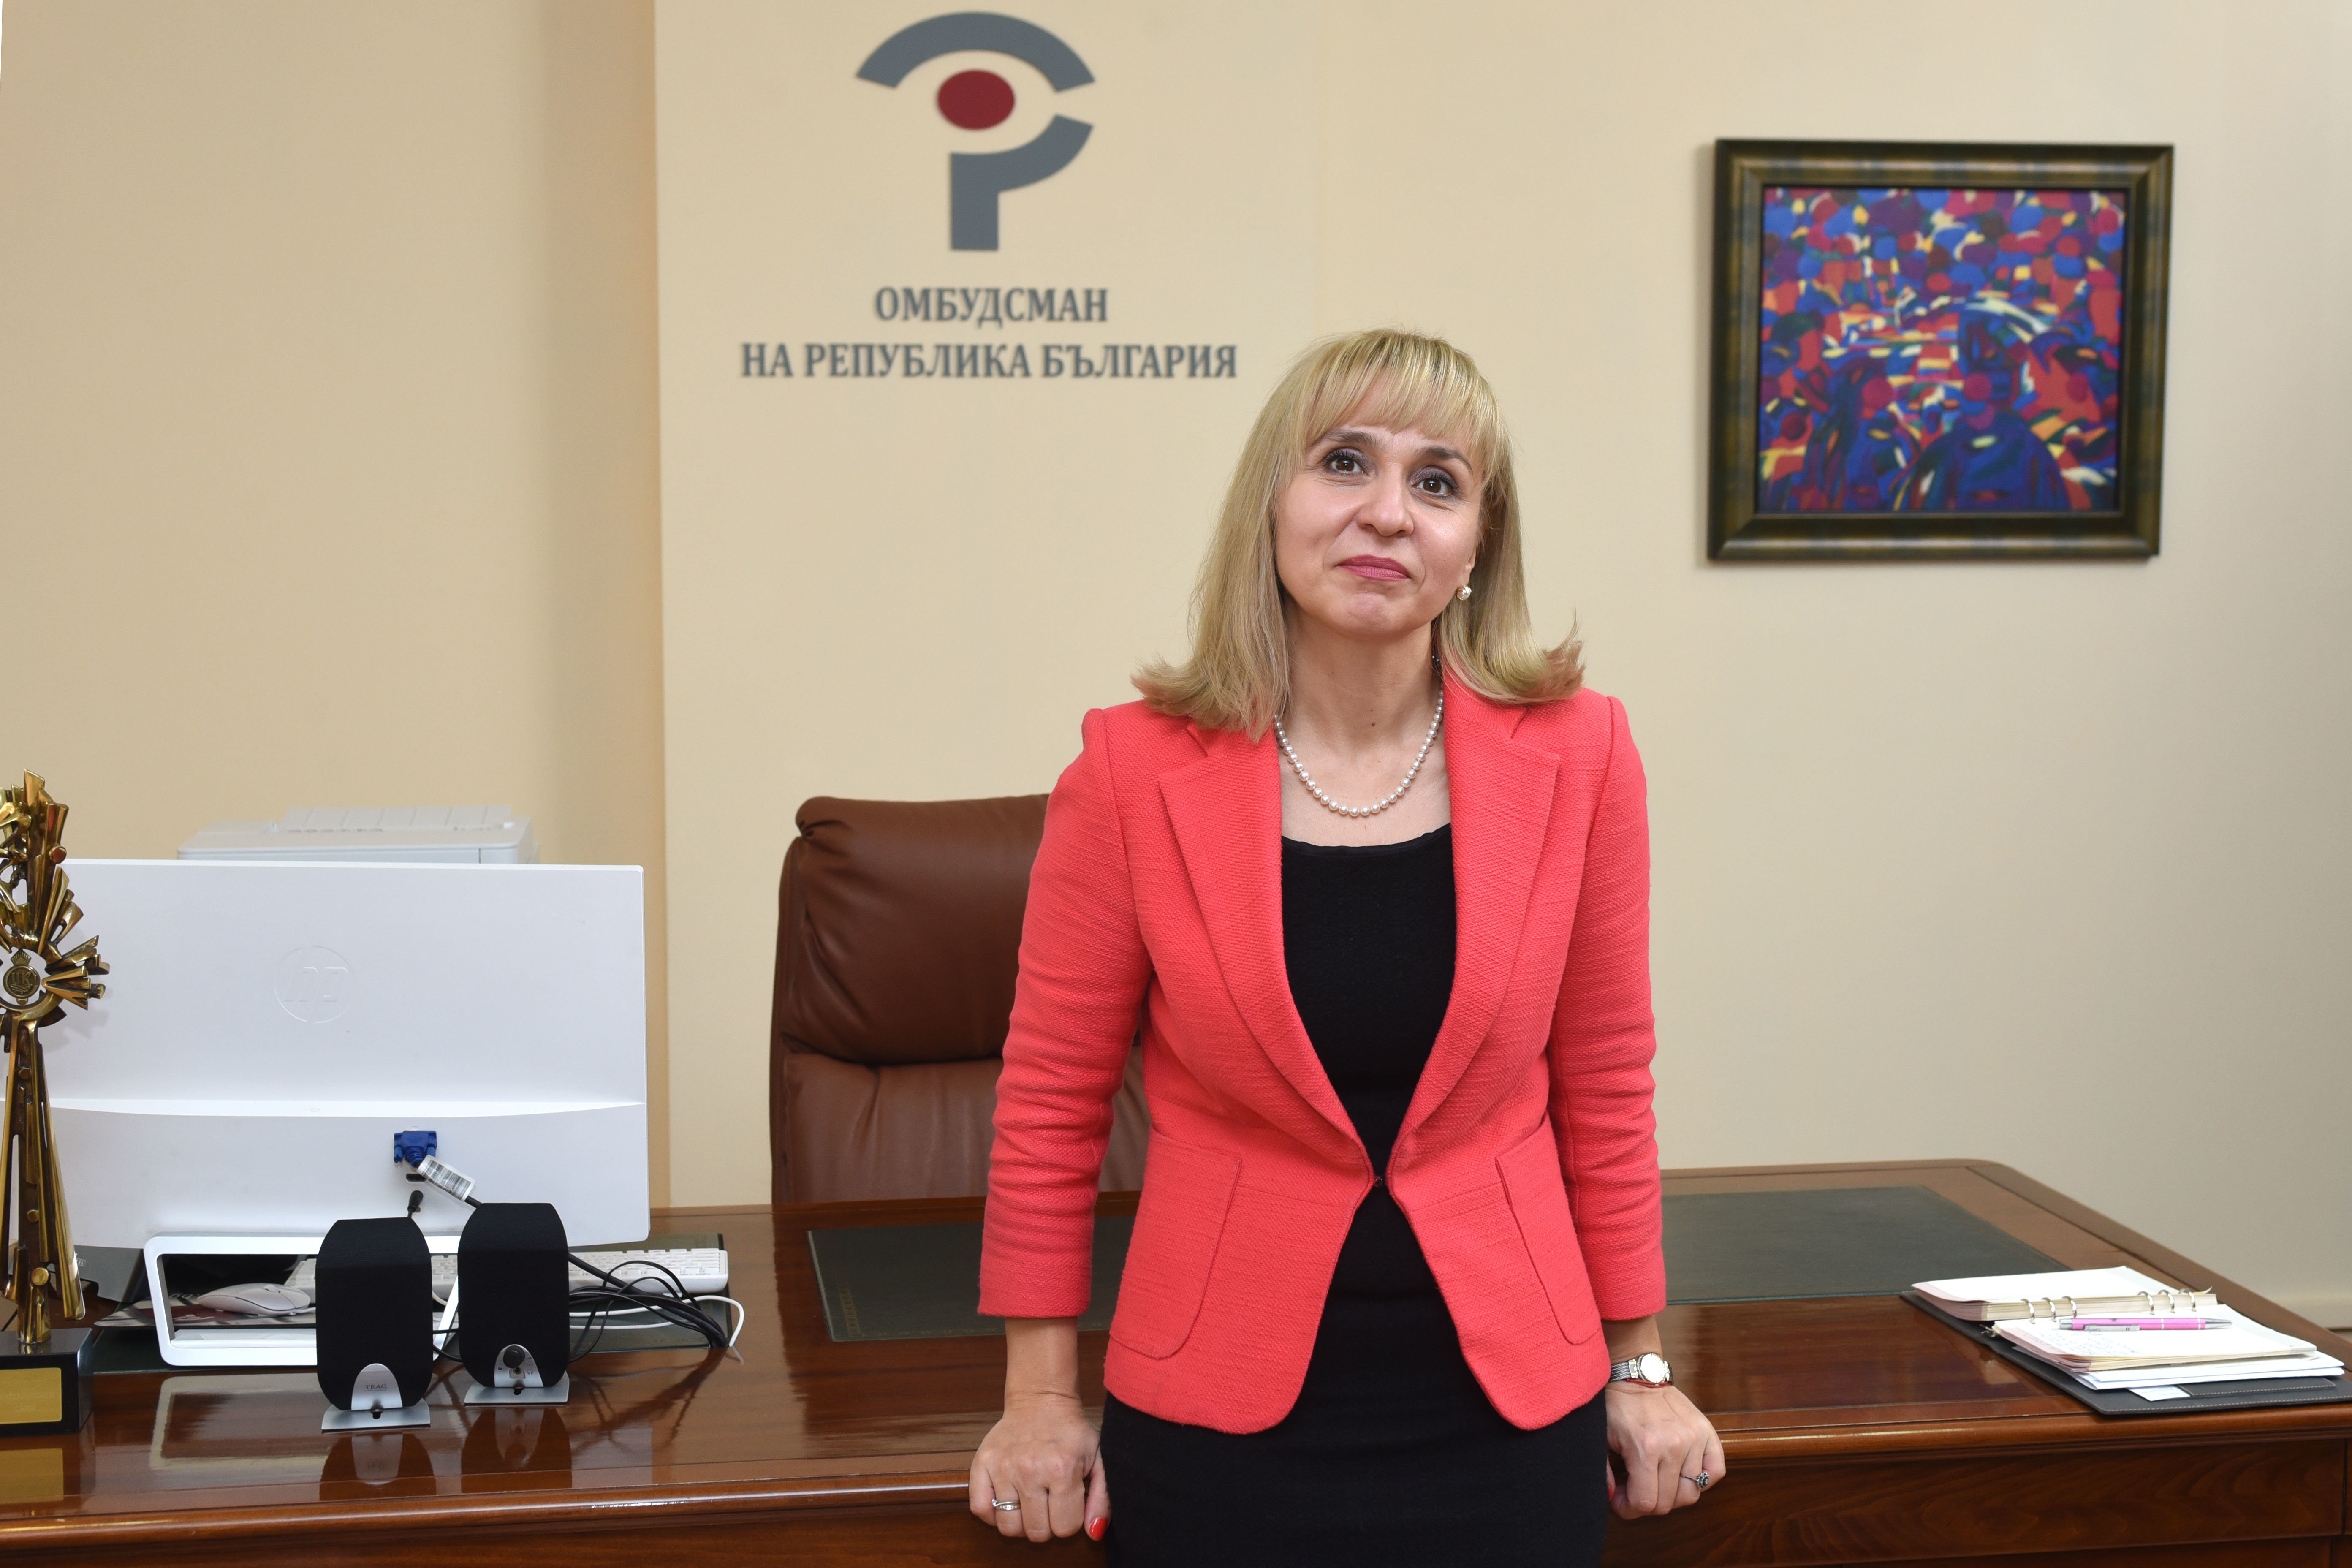 Омбудсманът Диана Ковачева изпрати препоръки до председателя на КЕВР Иван